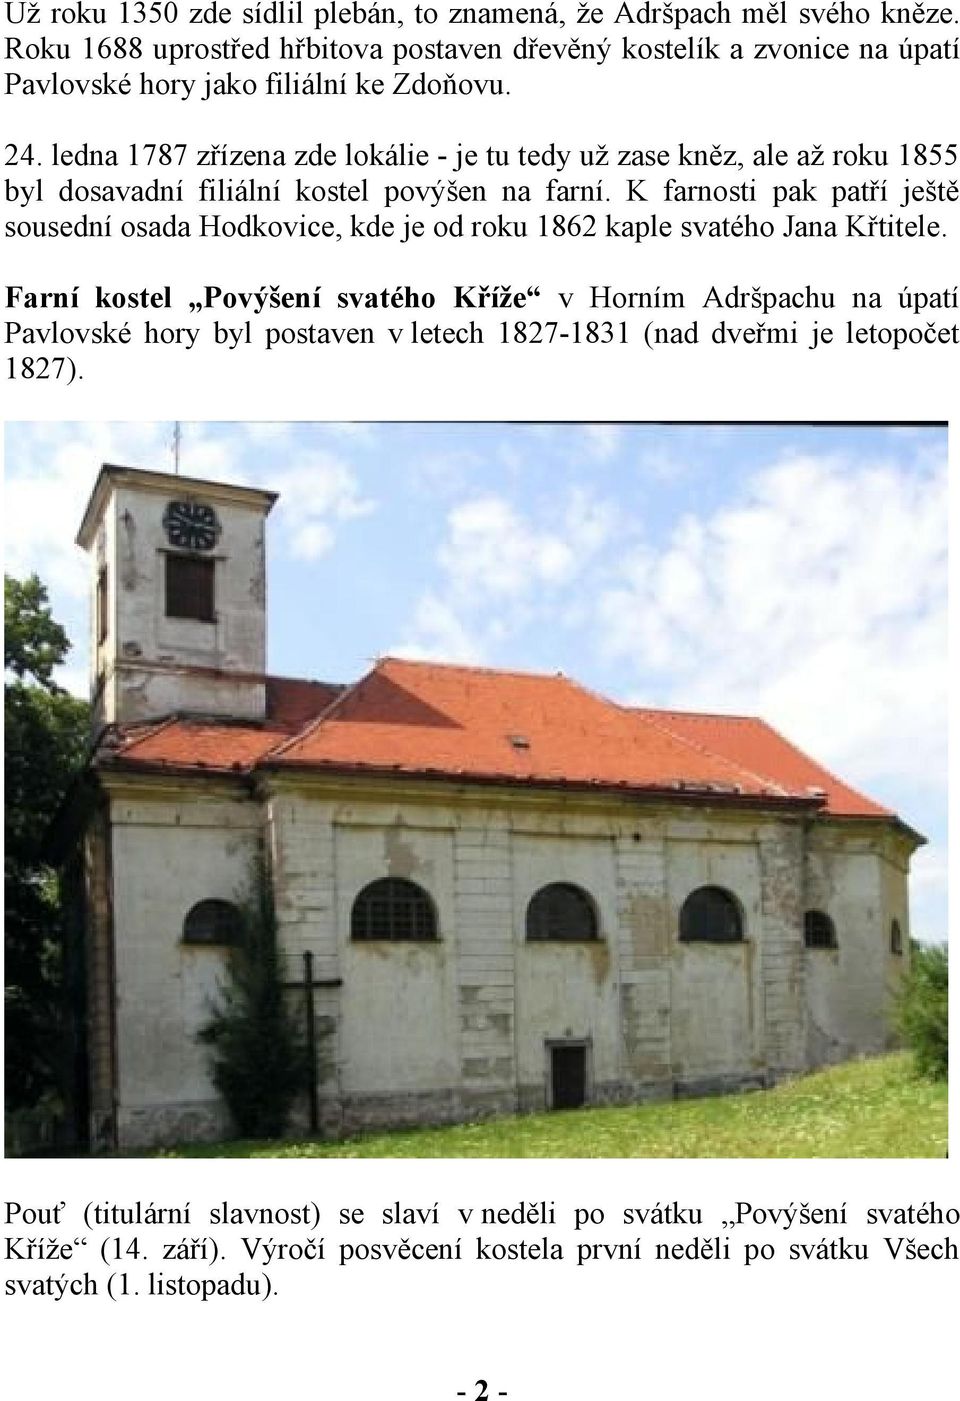 ledna 1787 zřízena zde lokálie - je tu tedy už zase kněz, ale až roku 1855 byl dosavadní filiální kostel povýšen na farní.